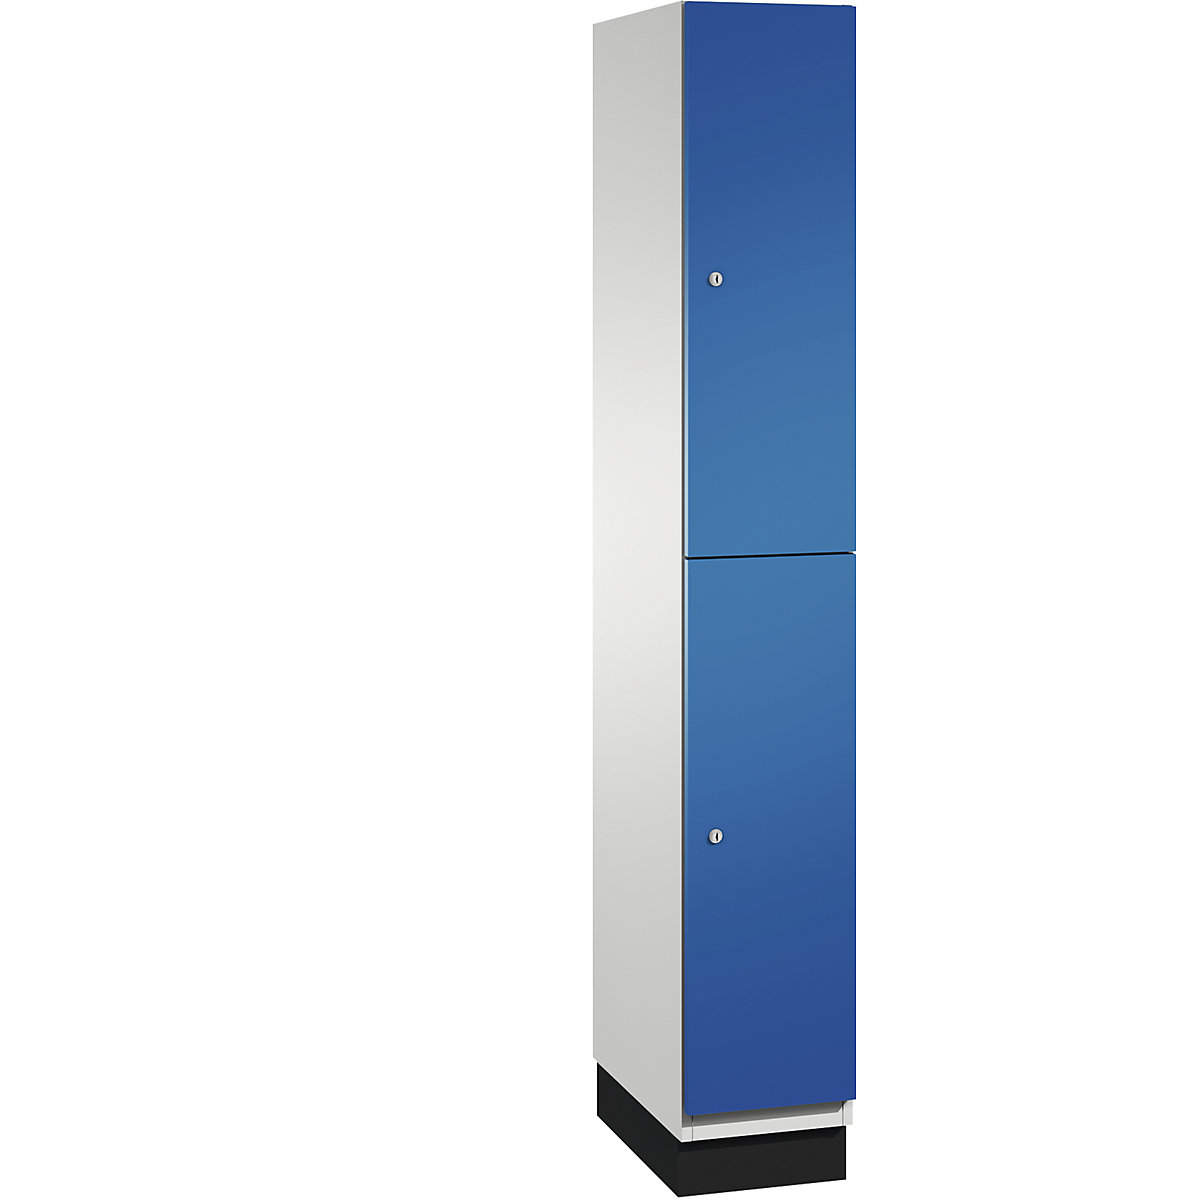 C+P – Skříň s boxy CAMBIO s tyčí na oděvy, 2 boxy, korpus světlý šedý / dveře hořcově modré, šířka 300 mm